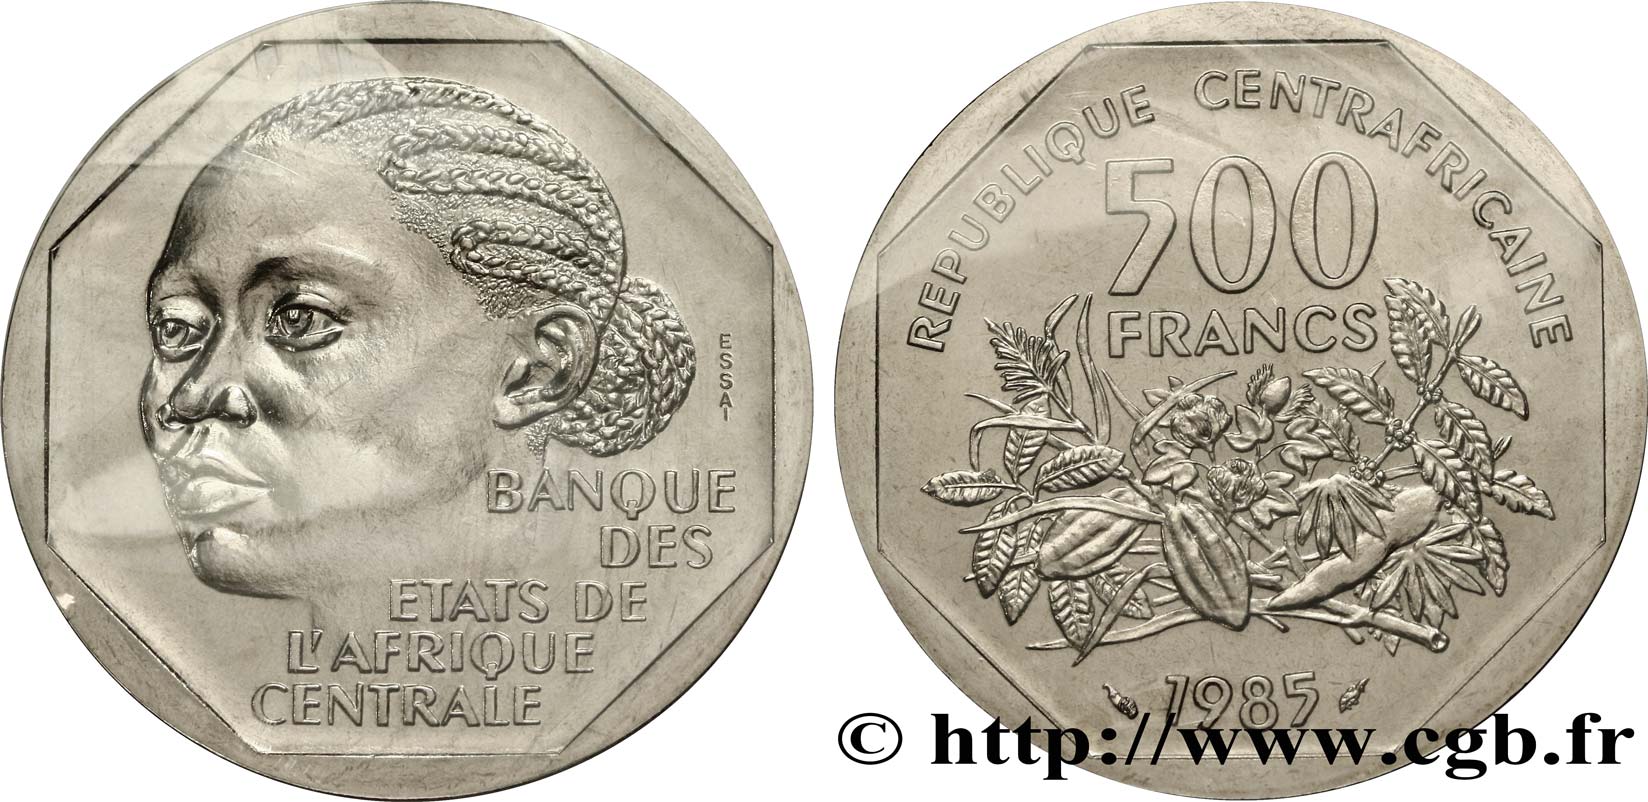 ZENTRALAFRIKANISCHE REPUBLIK Essai de 500 Francs femme africaine 1985 Paris ST 